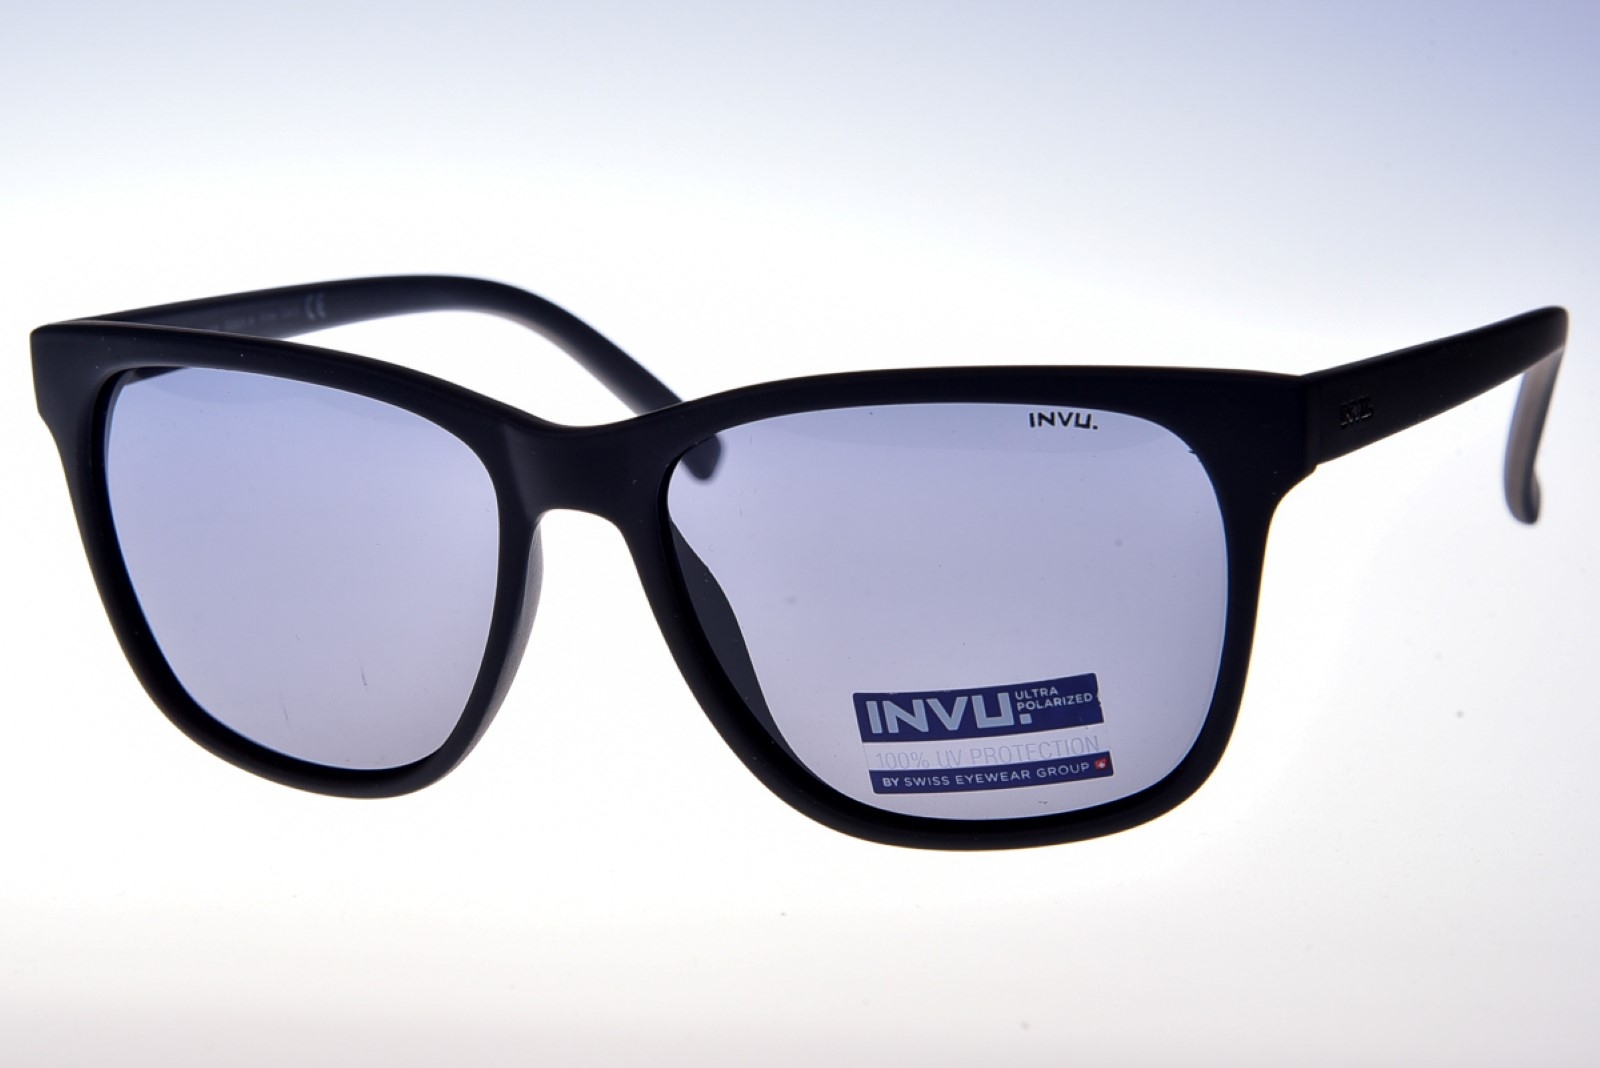 INVU. Classic B2831A - Pánske slnečné okuliare